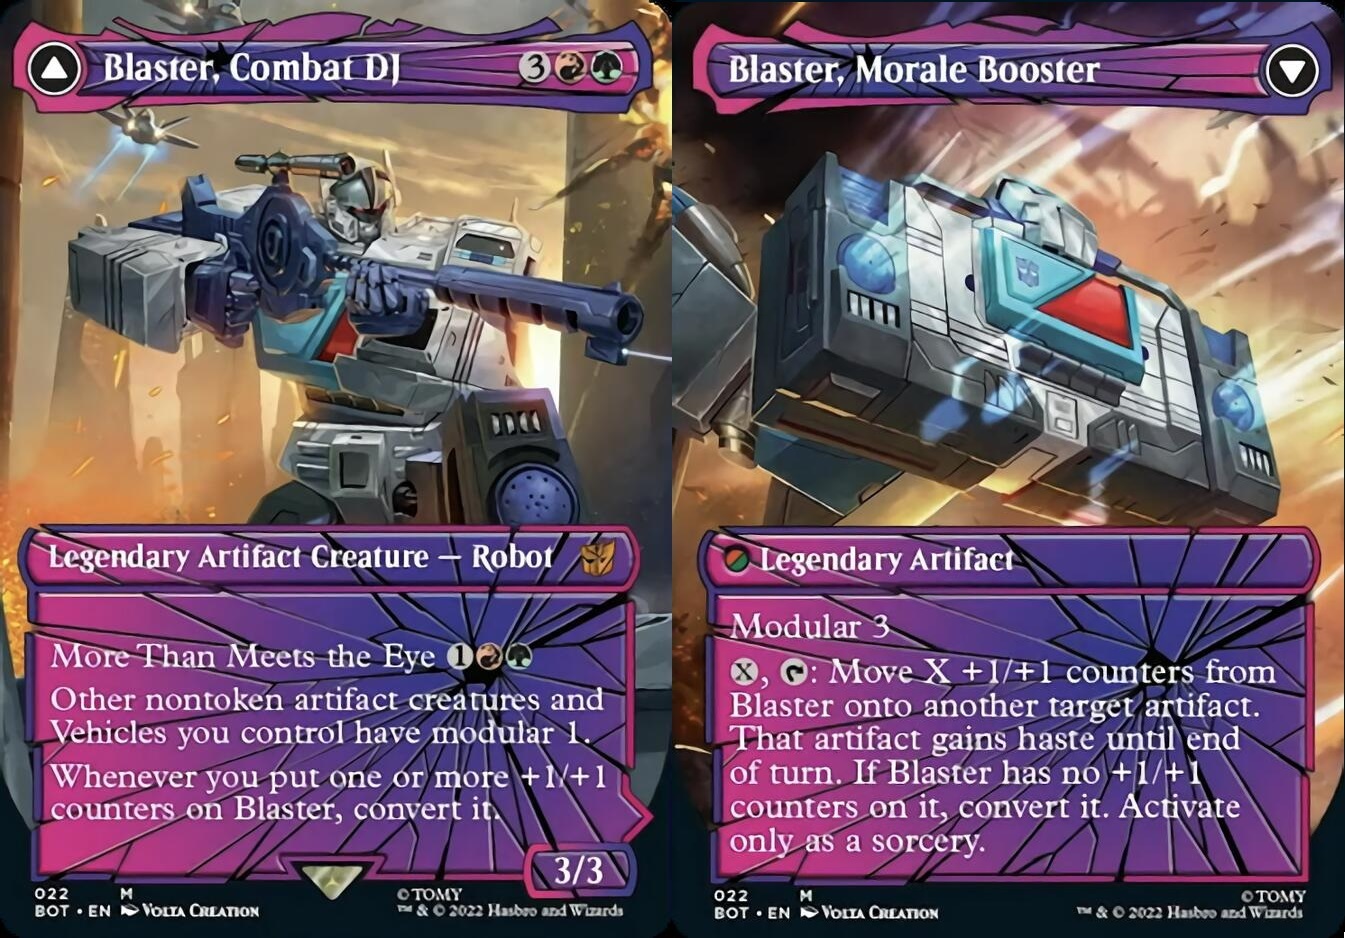 Blaster, Combat DJ (V.2) //Blaster, Morale Booster